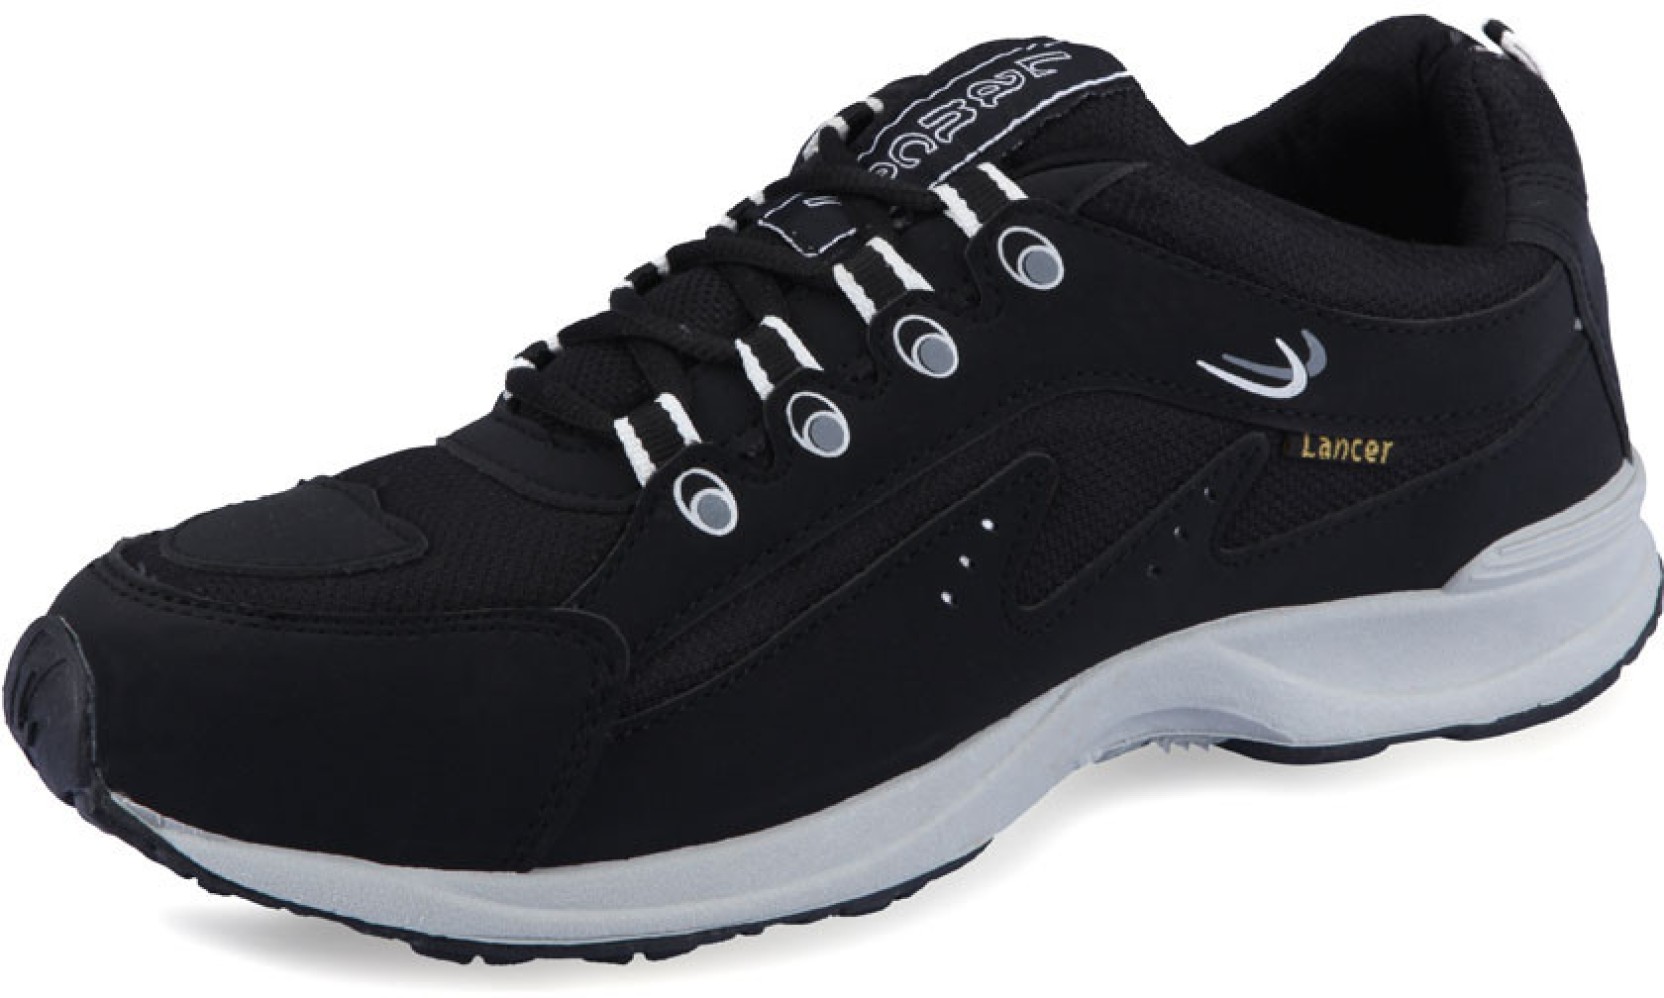 Lancer Men Black Sports Running Shoes - Buy Black Color Lancer Men ...